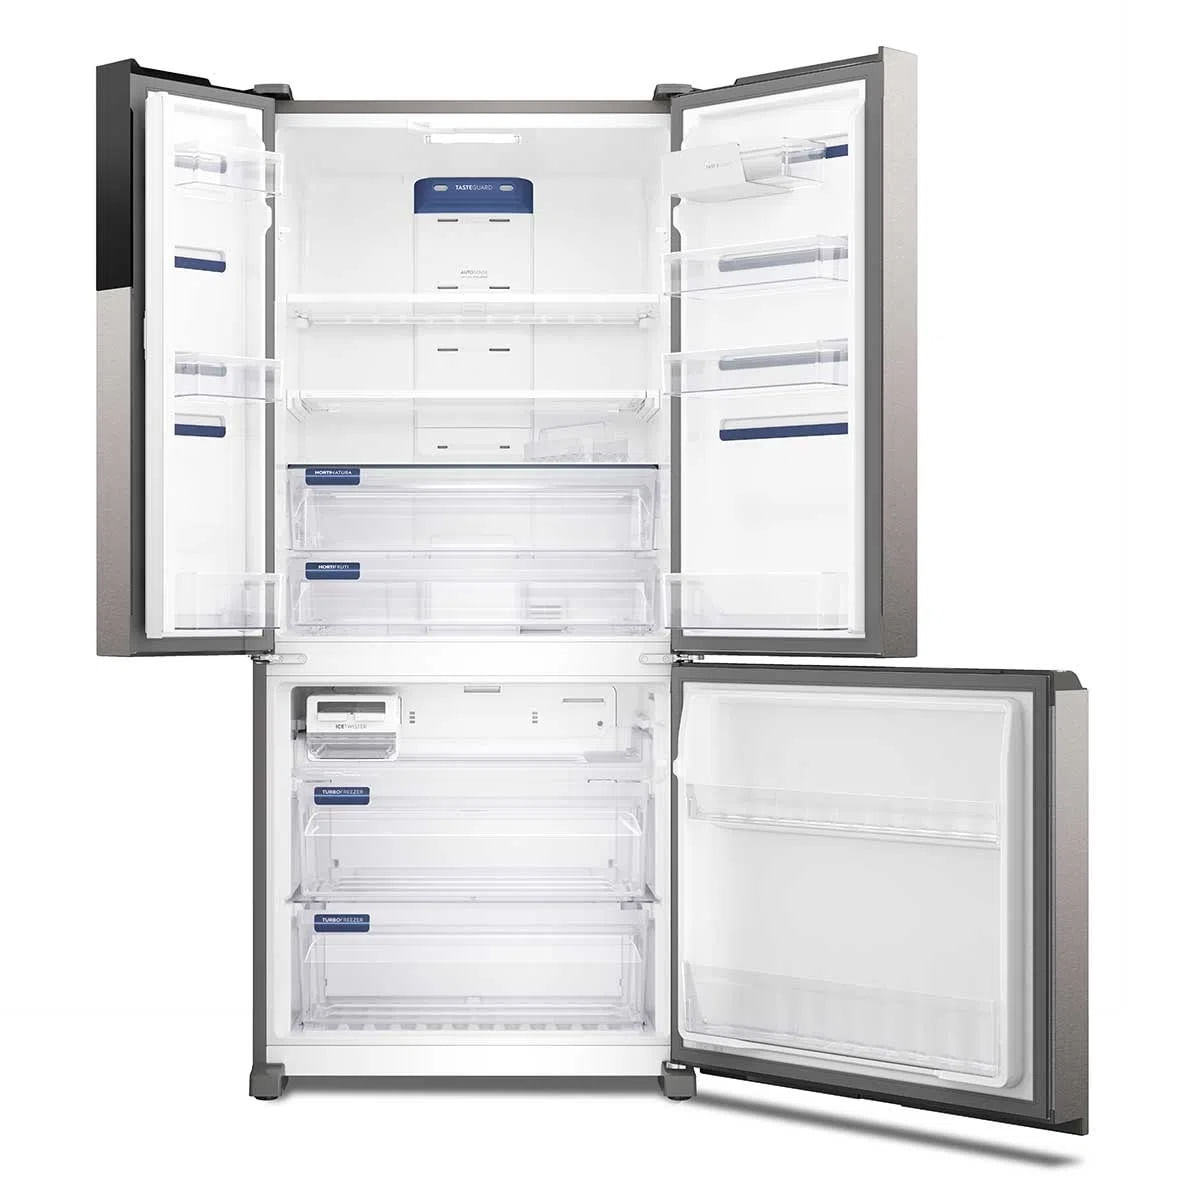 geladeira-electrolux-3-portas-inverter-com-autosense-efficient-im8s-ff3p-590l-x-220v-3.jpg